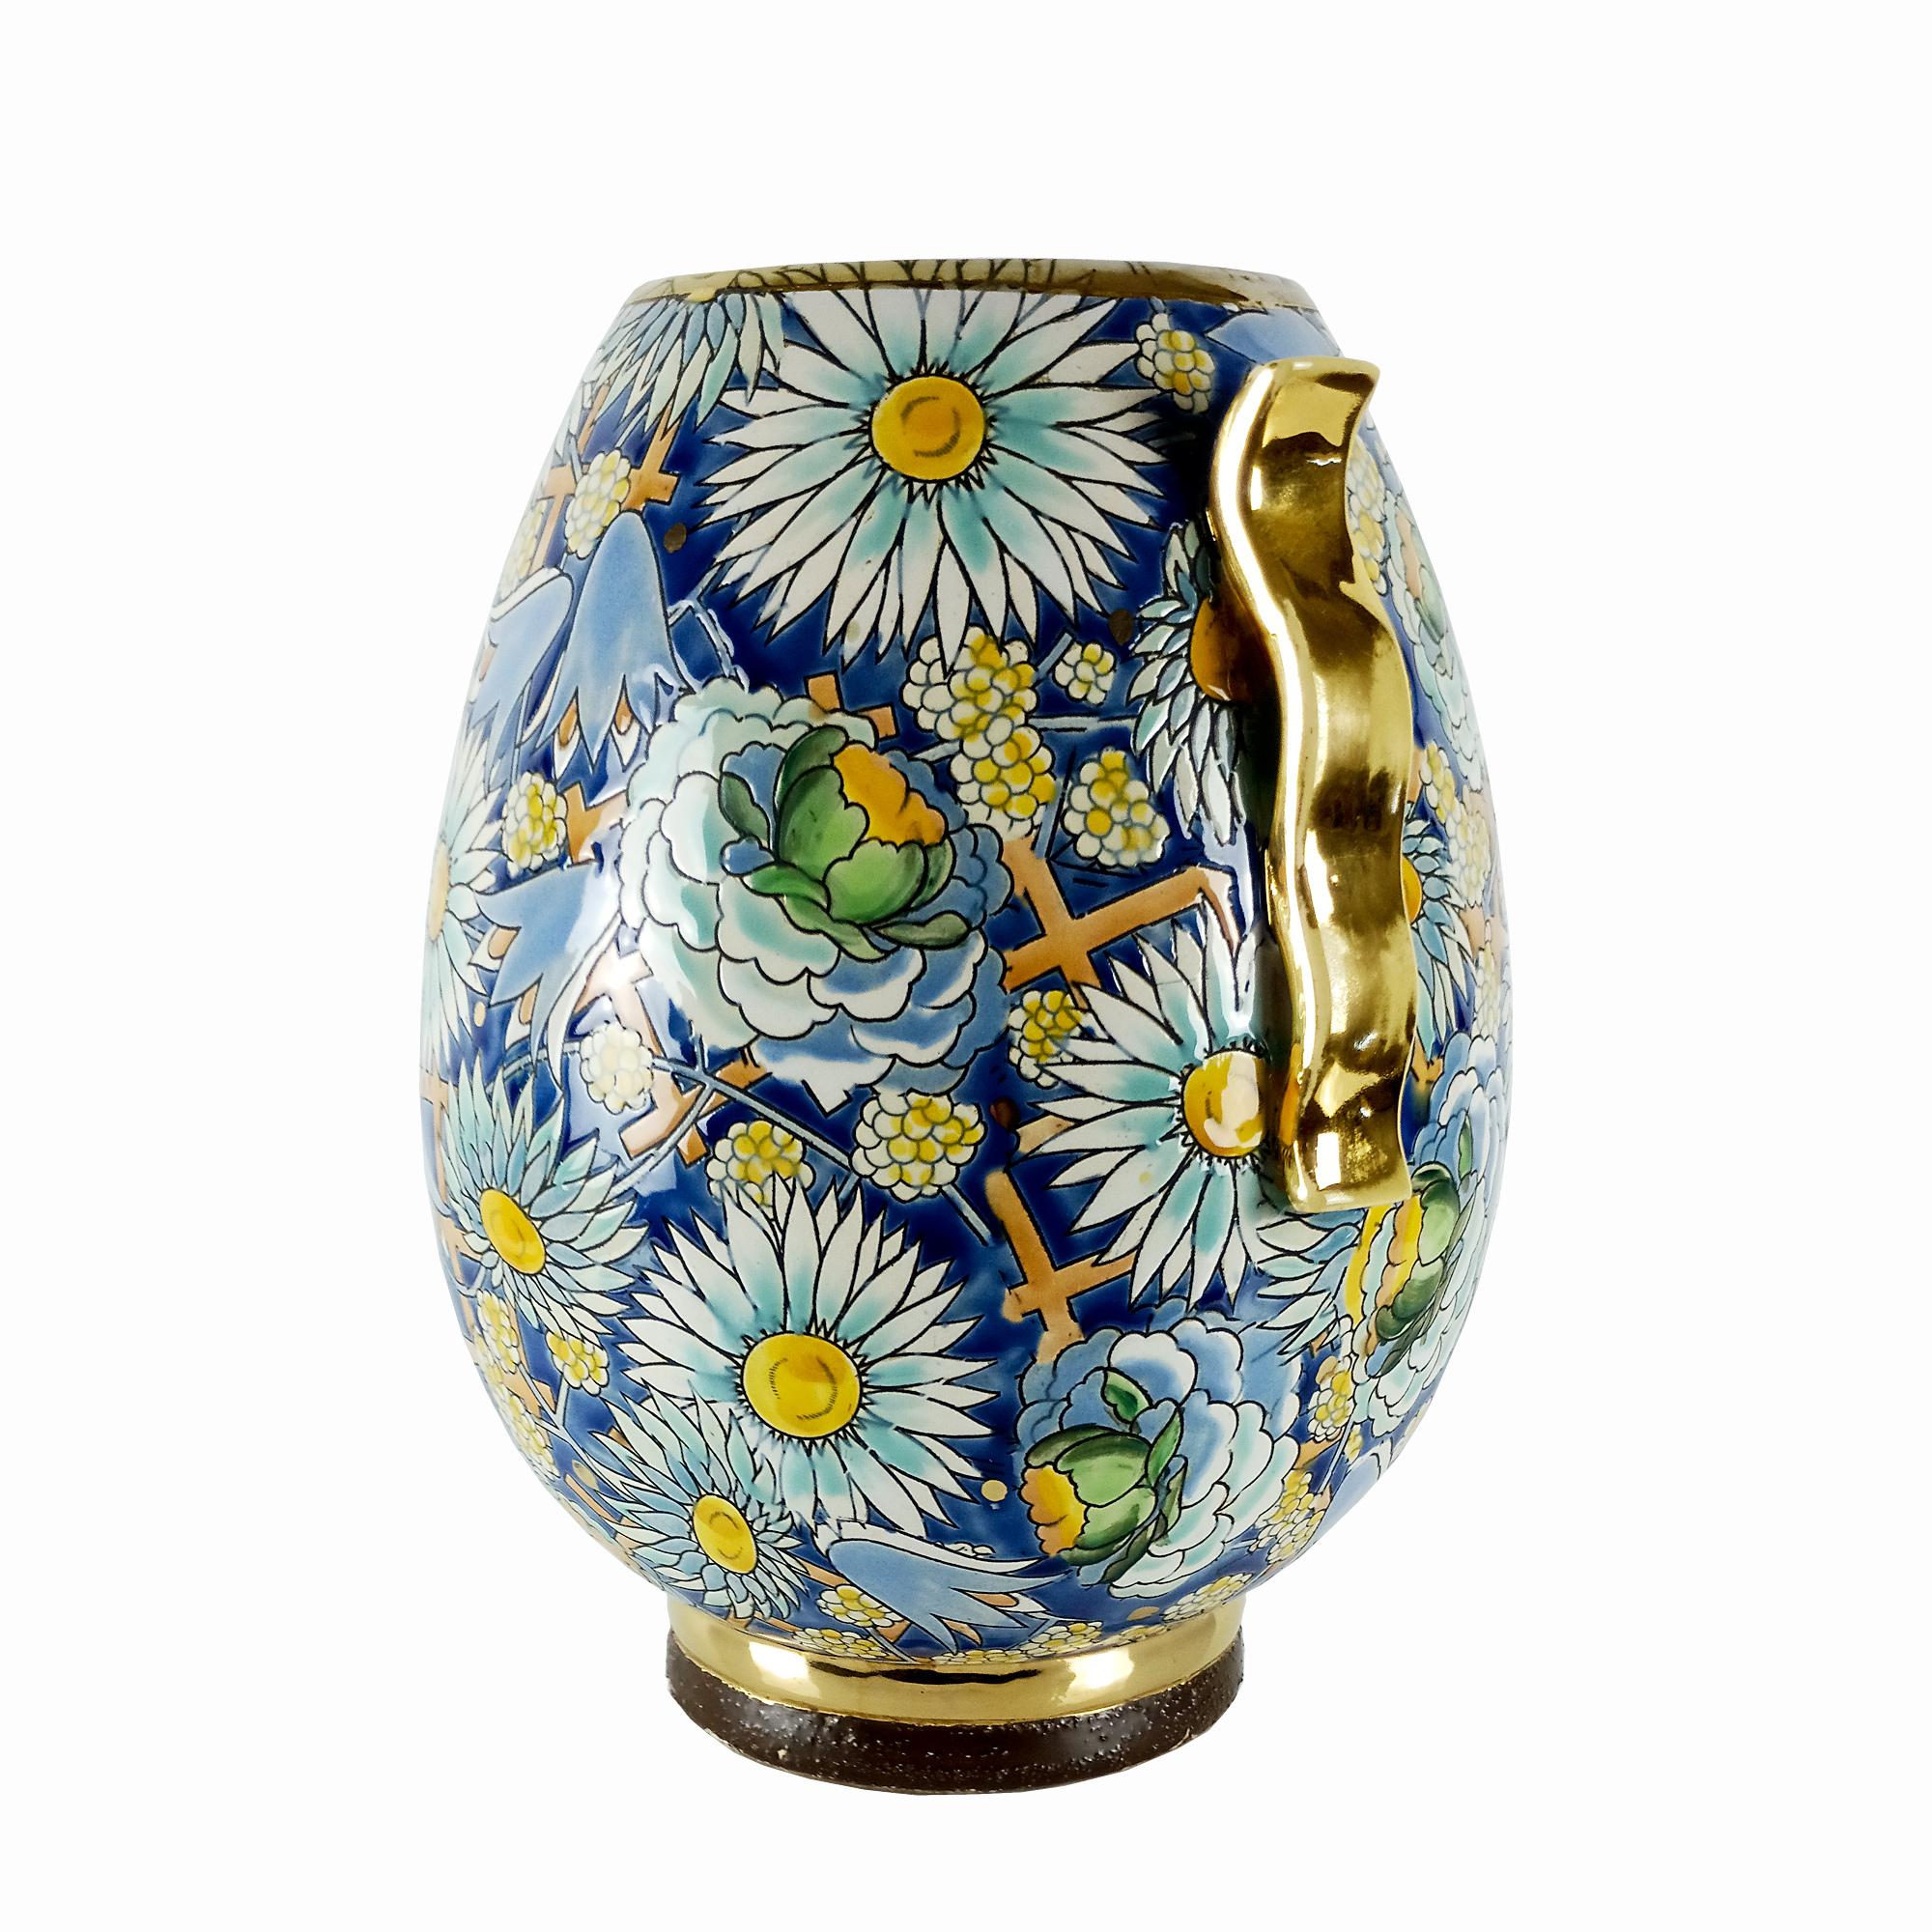 Art Deco Vase aus emaillierter Keramik mit floralen und geometrischen Motiven, teilweise vergoldete Henkel und Sockel.
Geschaffen von Raymond Chevallier (1900-1959), dem Nachfolger von Charles Catteau.
Herstellung: Boch La Louviere.

Belgien um 1925.